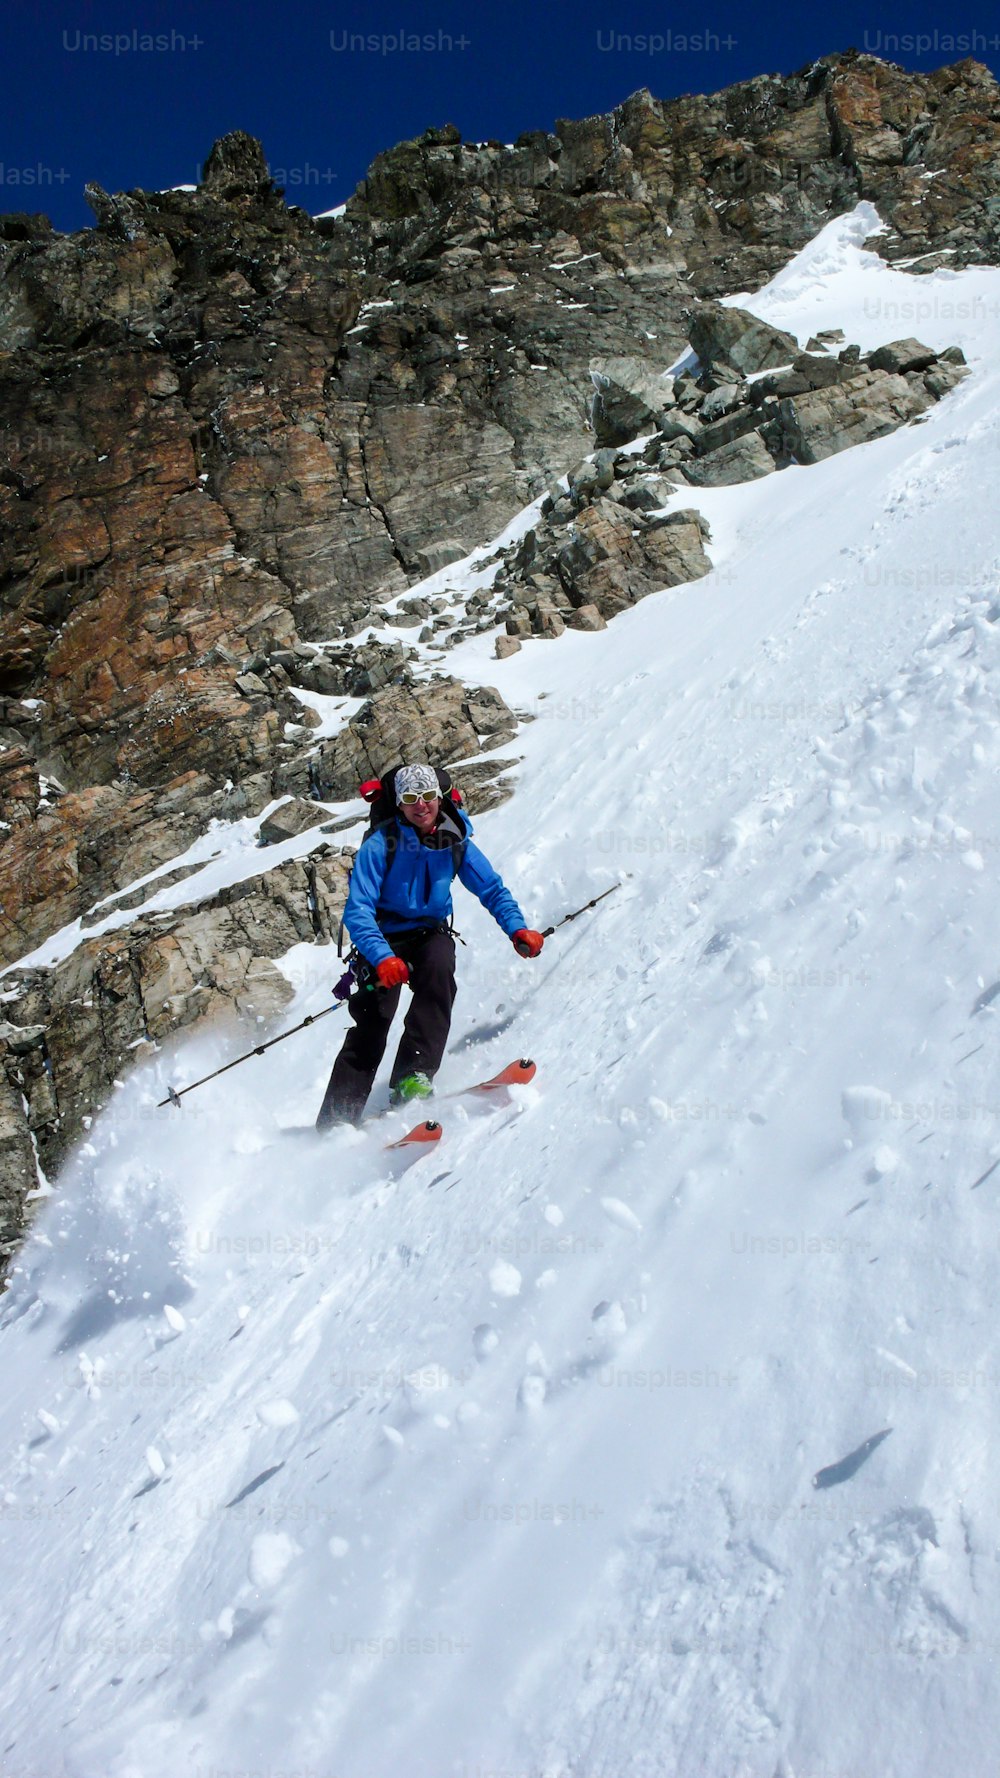 esquiador extremo masculino esquiando por um couloir muito íngreme no inverno profundo nos Alpes suíços perto de Klosters em um belo dia de inverno